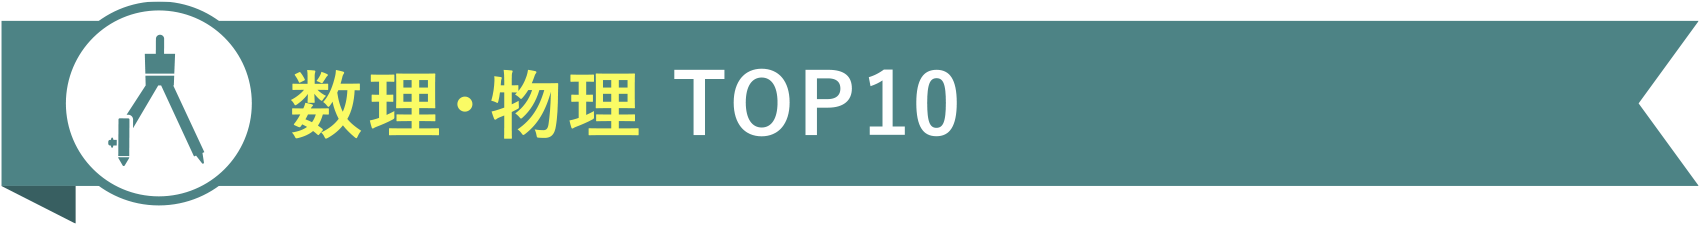 数理・物理 TOP10